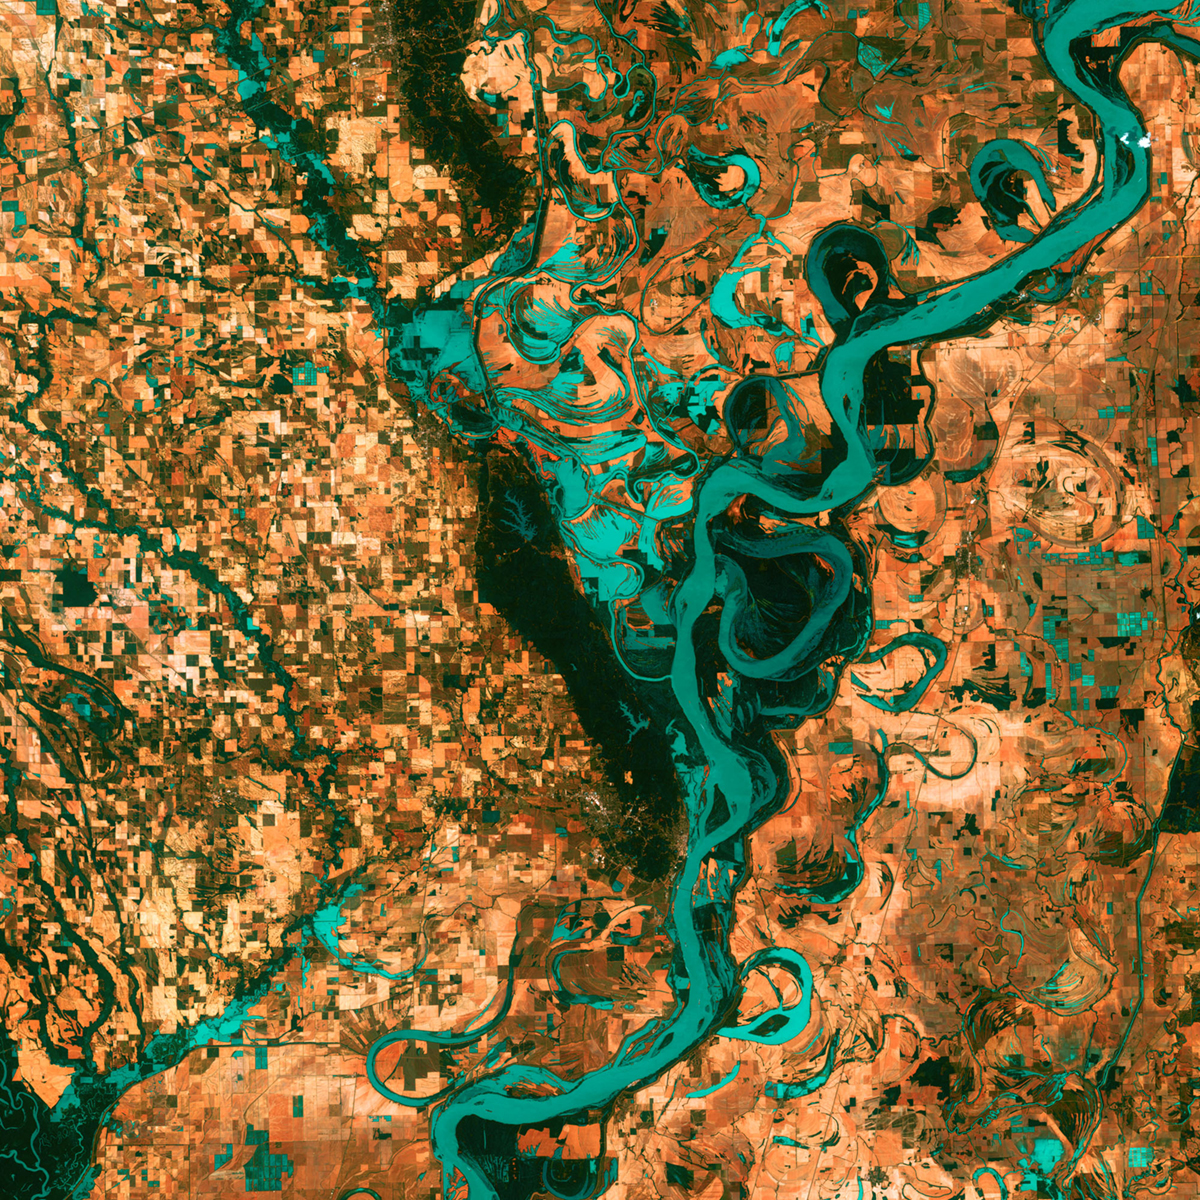 Satellite image of Mississippi River